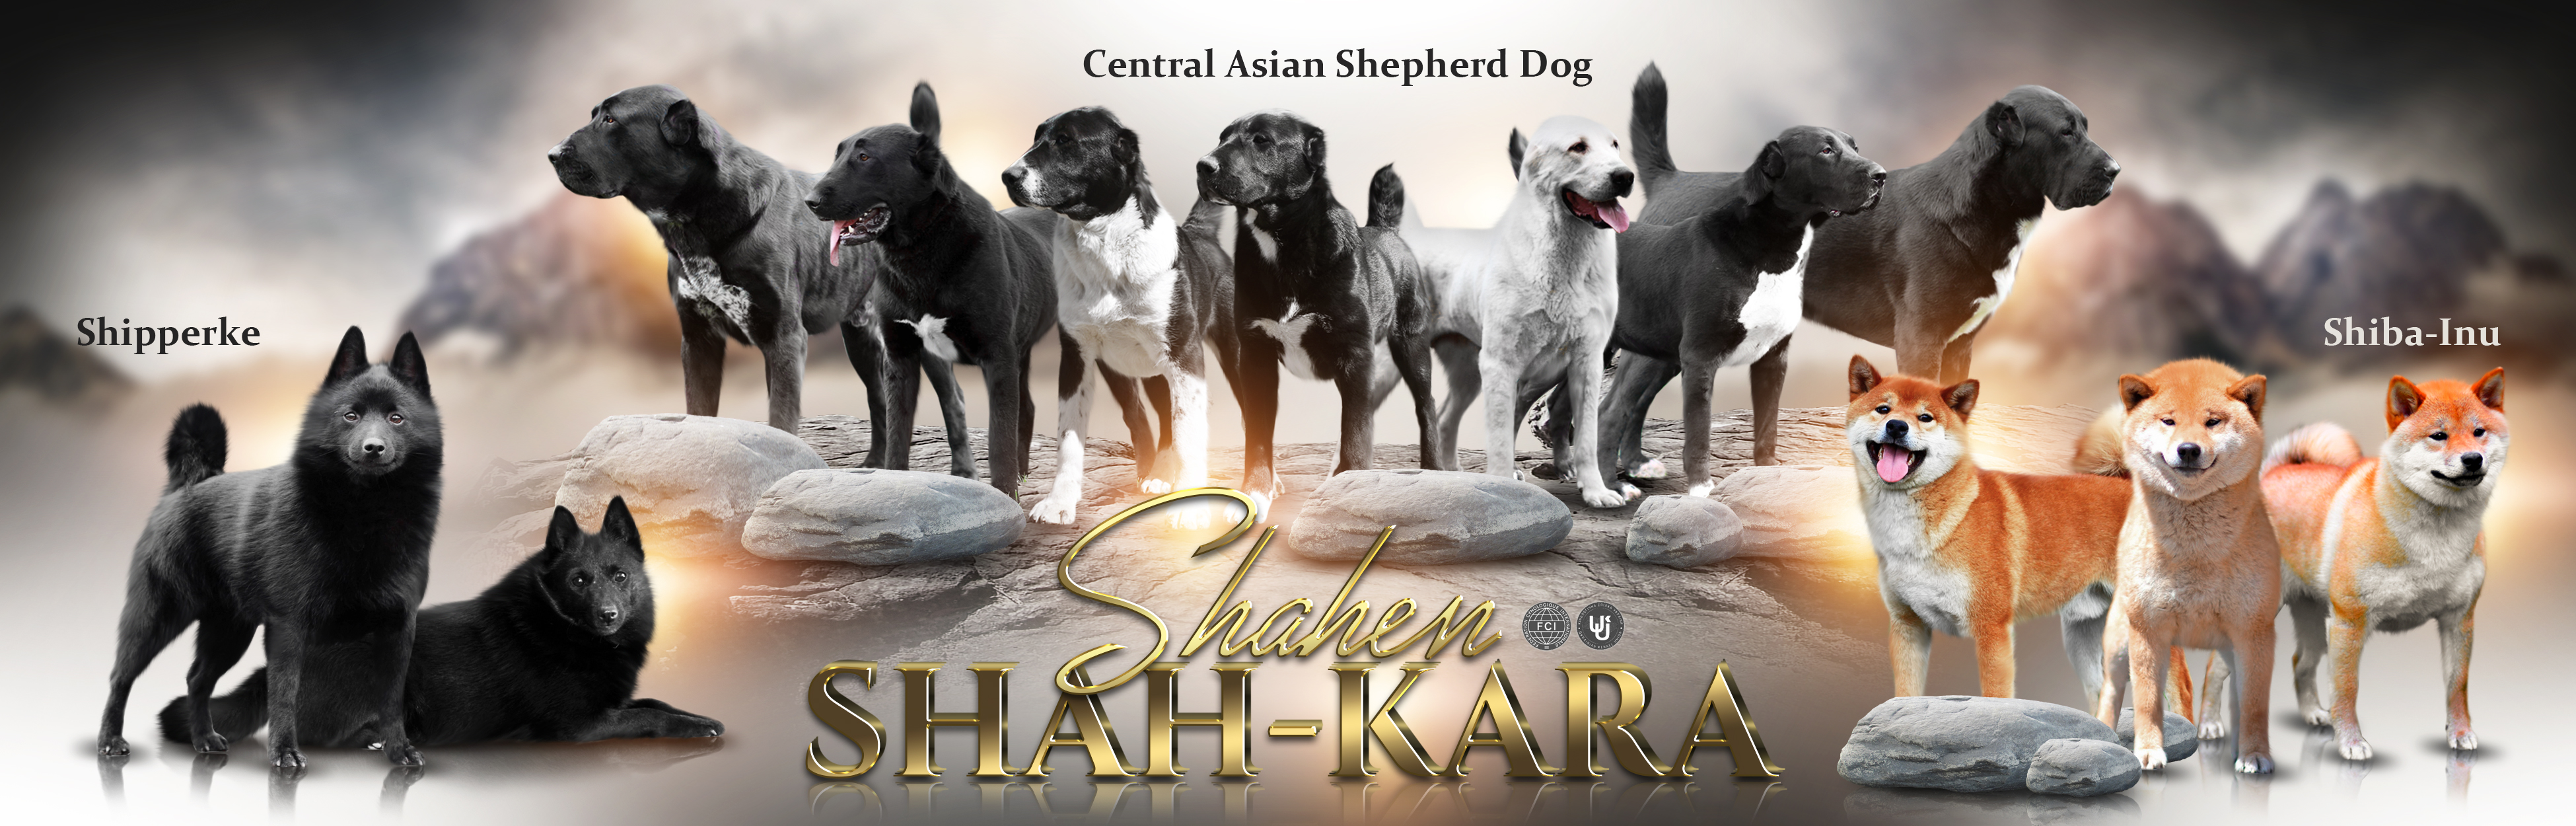 Сайт племенного питомника Среднеазиатских овчарок, Шипперке и Шиба (Сиба) Ину "SHAHEN SHAH - KARA"